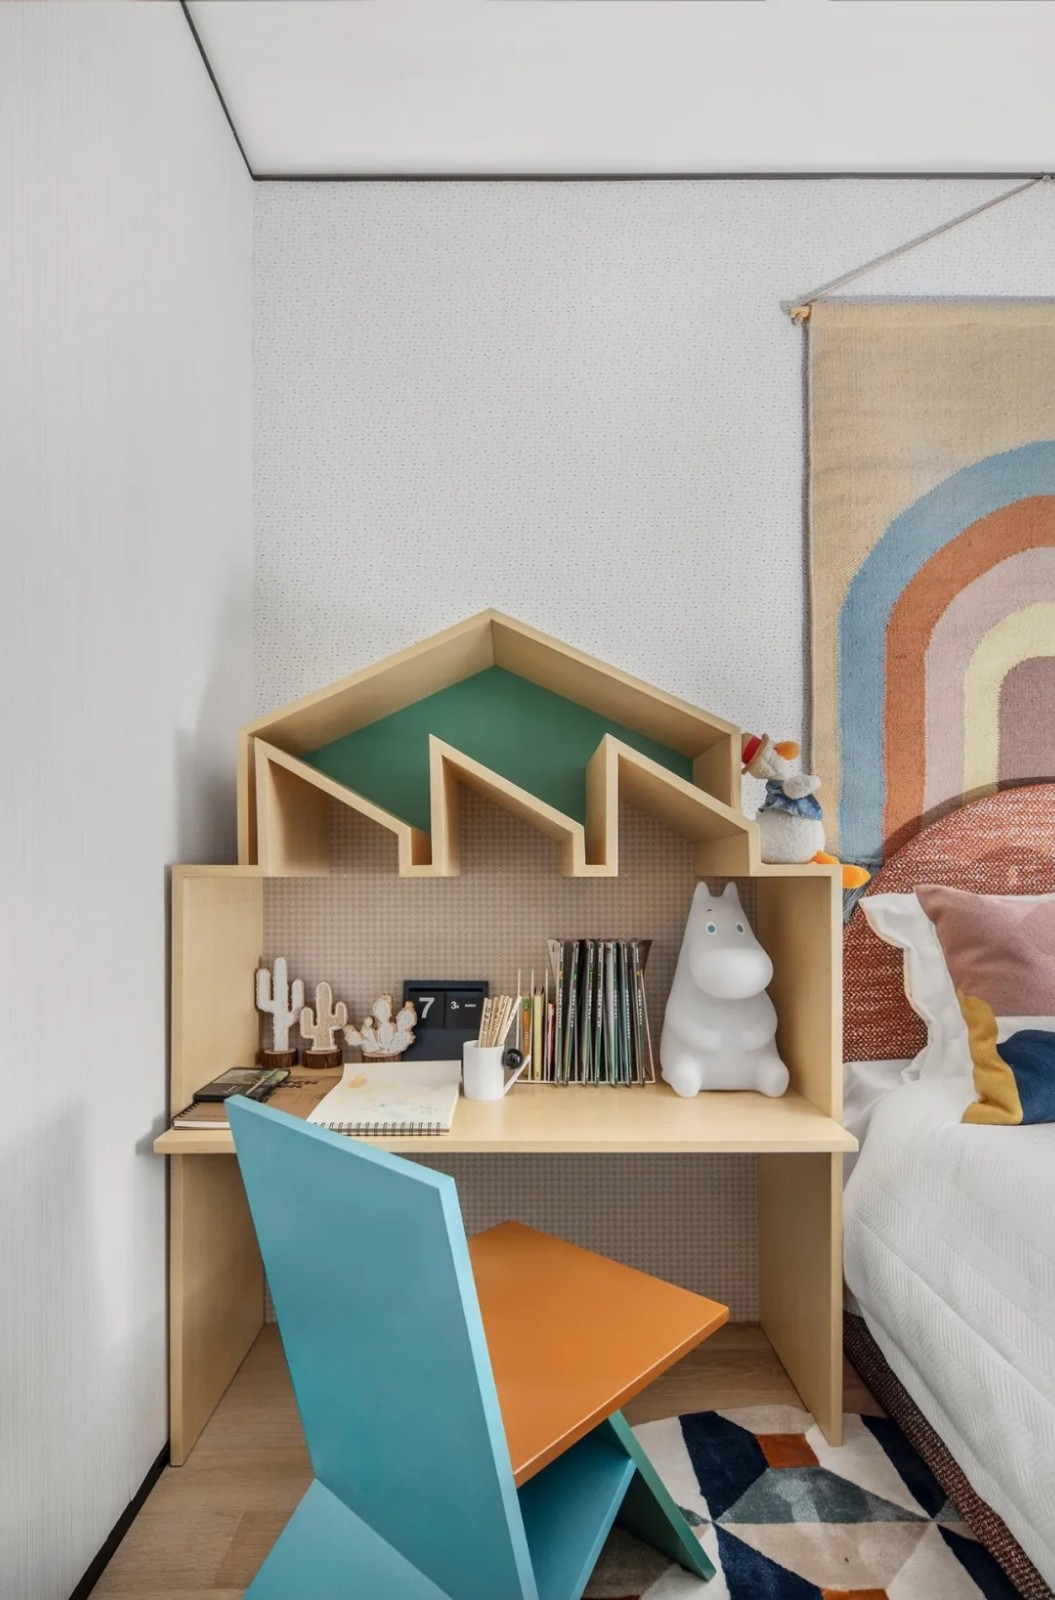 現代朋克風格室內設計家裝案例-兒童房